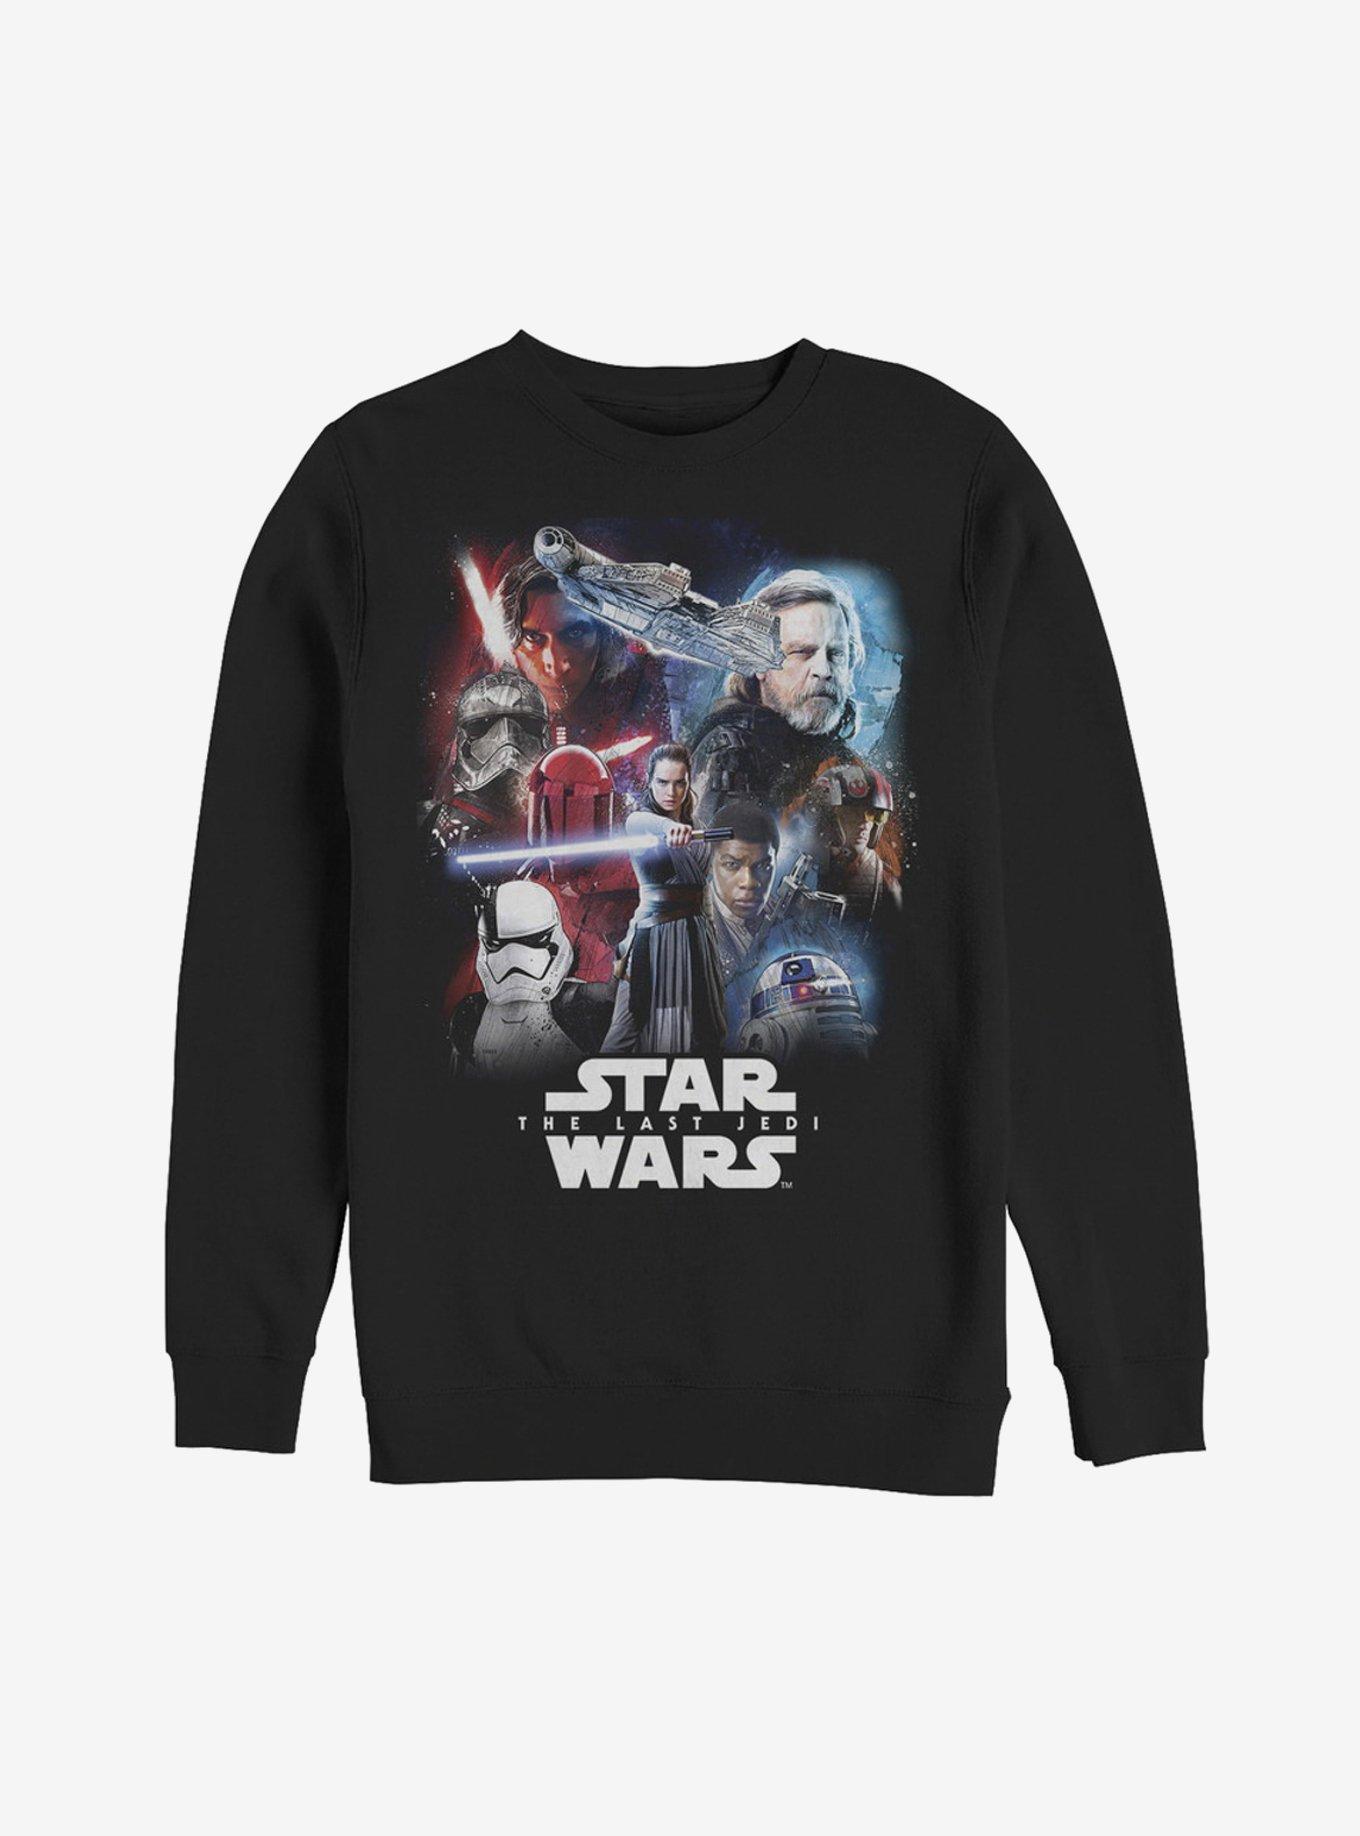 Star Wars: The Last Jedi Character Black Sweatshirt, BLACK, hi-res